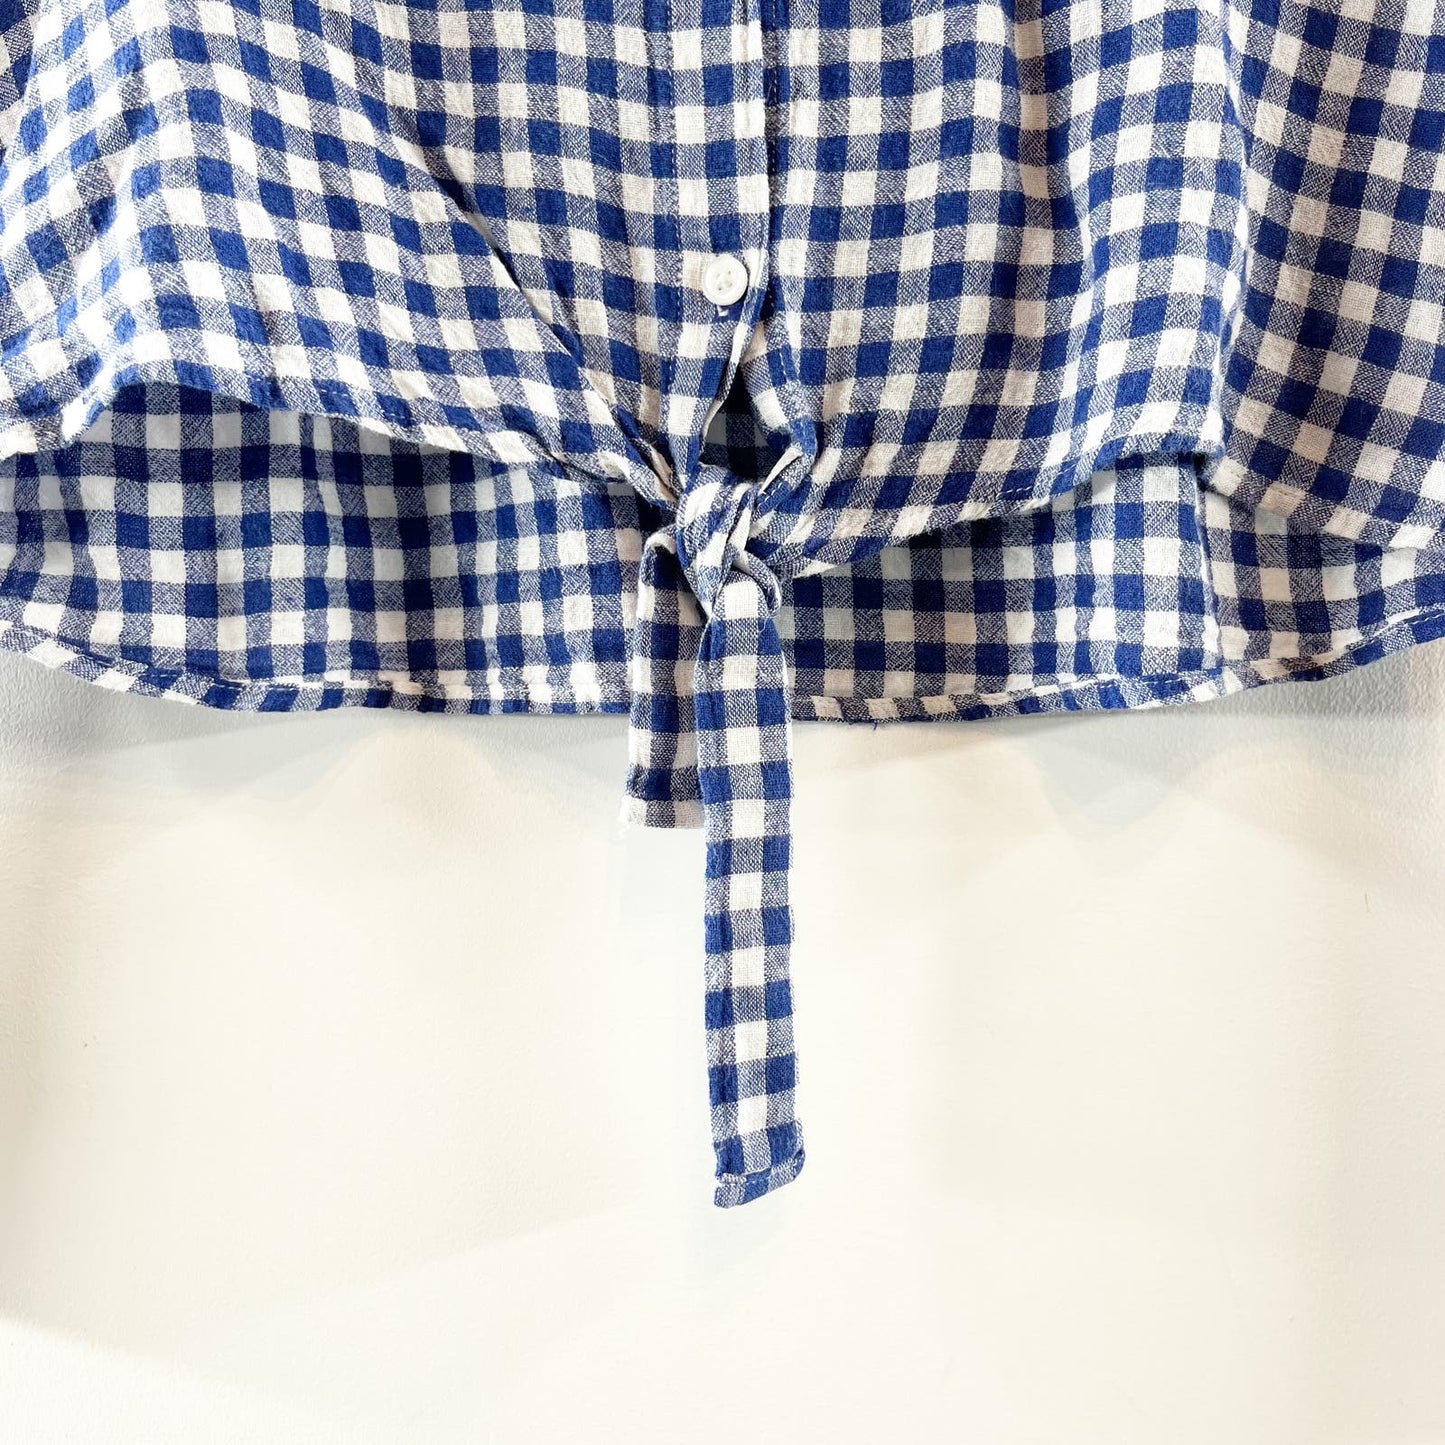 Rails Val Tie Front Button Up Gingham Plaid Linen Blend Shirt Top Blue XS